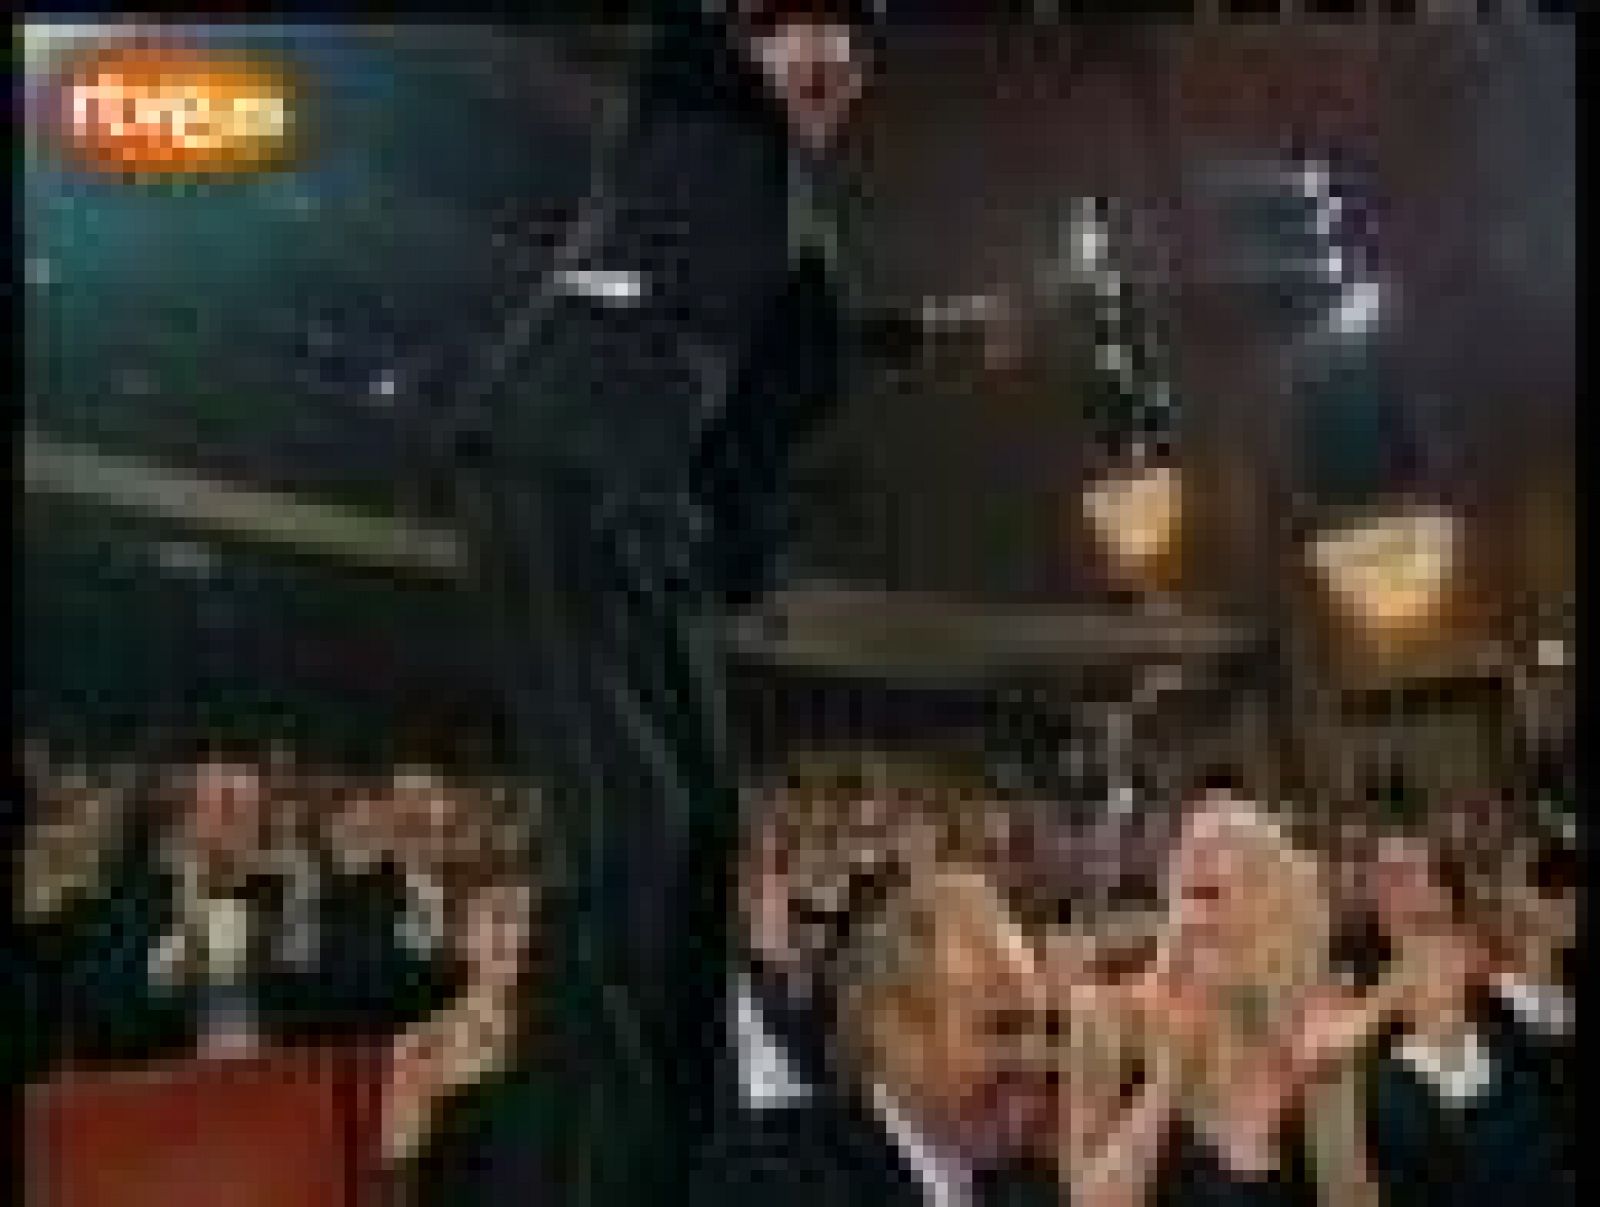 El italiano Roberto Benigni ganó el Oscar a mejor actor en 1999 por 'La vida es bella' con un papel íntegramente en italiano. La película, que él mismo dirigía, también ganó los Oscar a mejor película de habla no inglesa y mejor banda sonora.